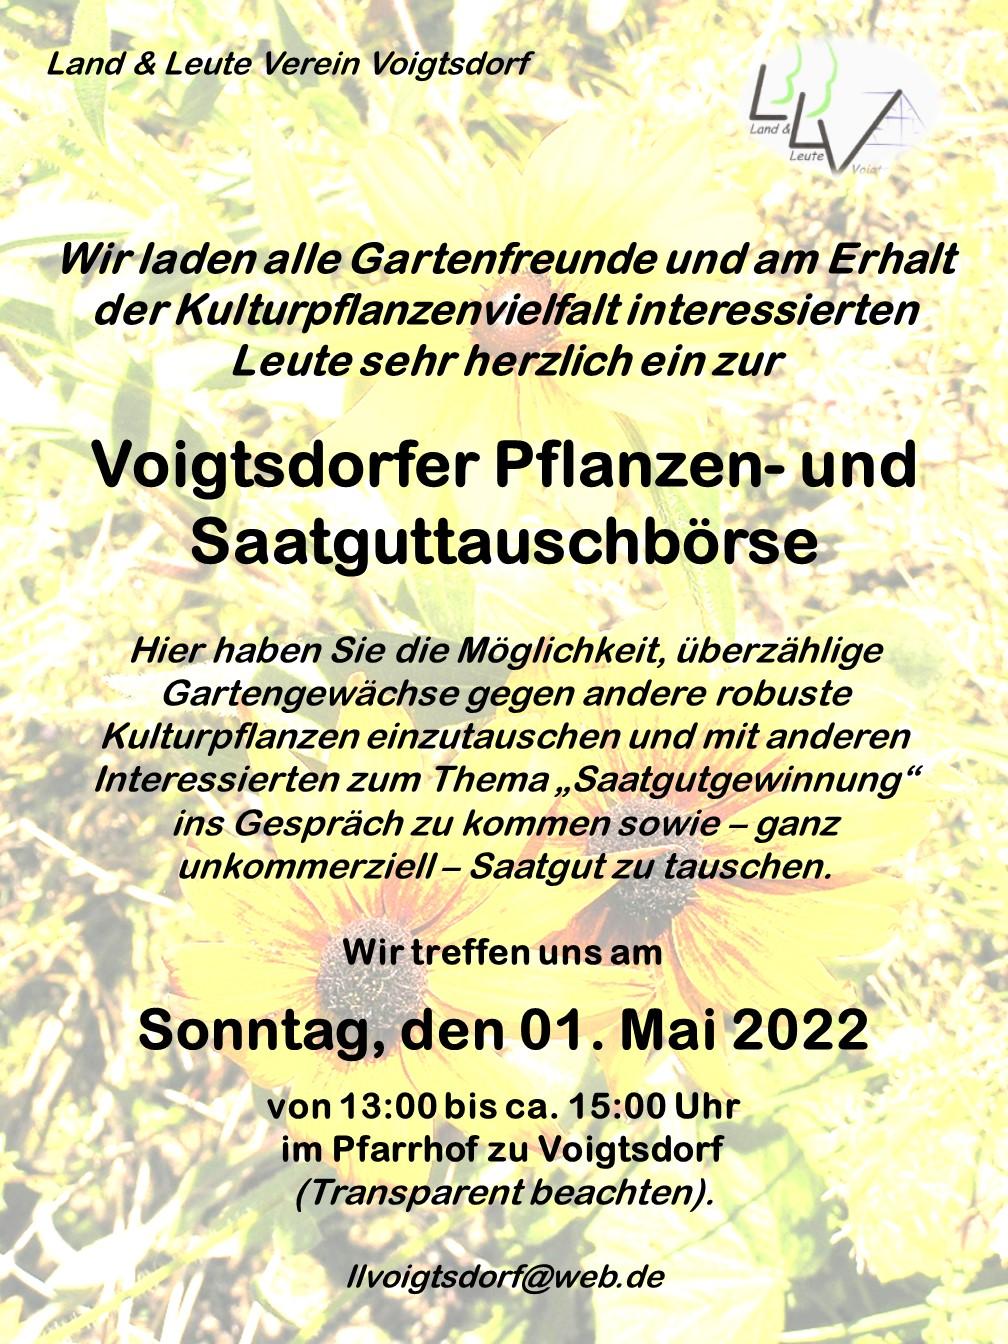 Pflanzen- und Saatguttauschbörse 1. Mai 2022 Voigtsdorf